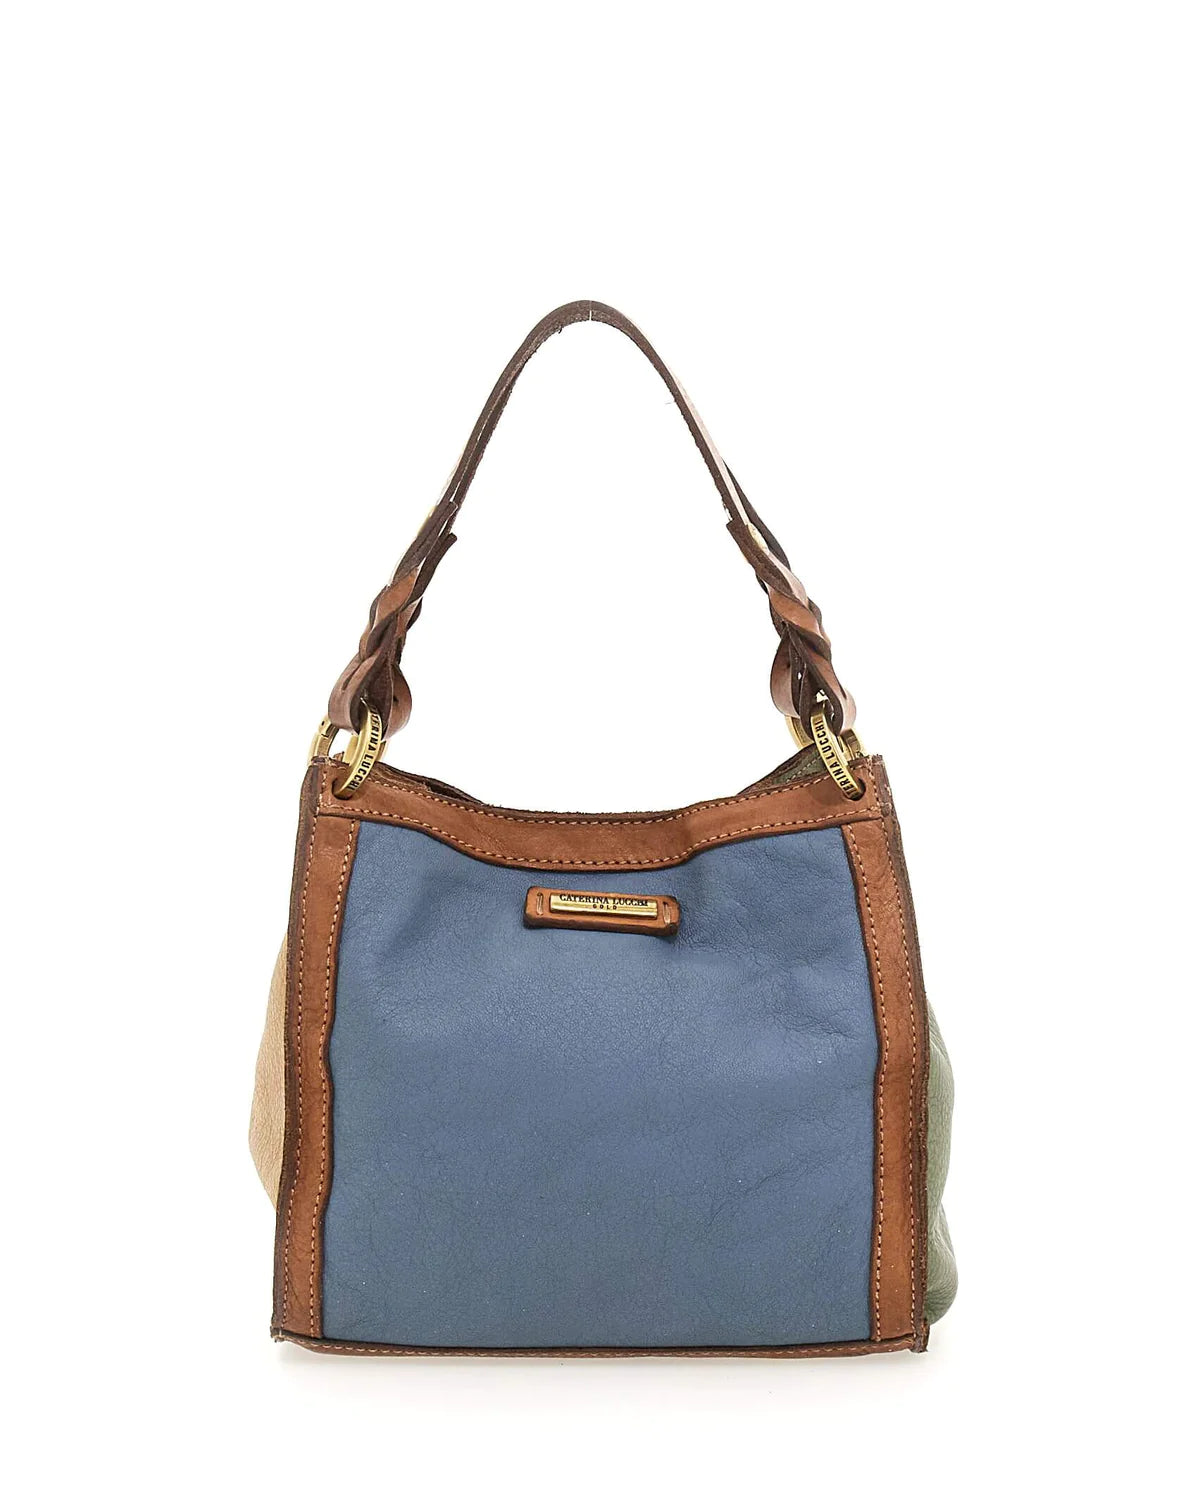 Anna Small Shopping Bag - Multi